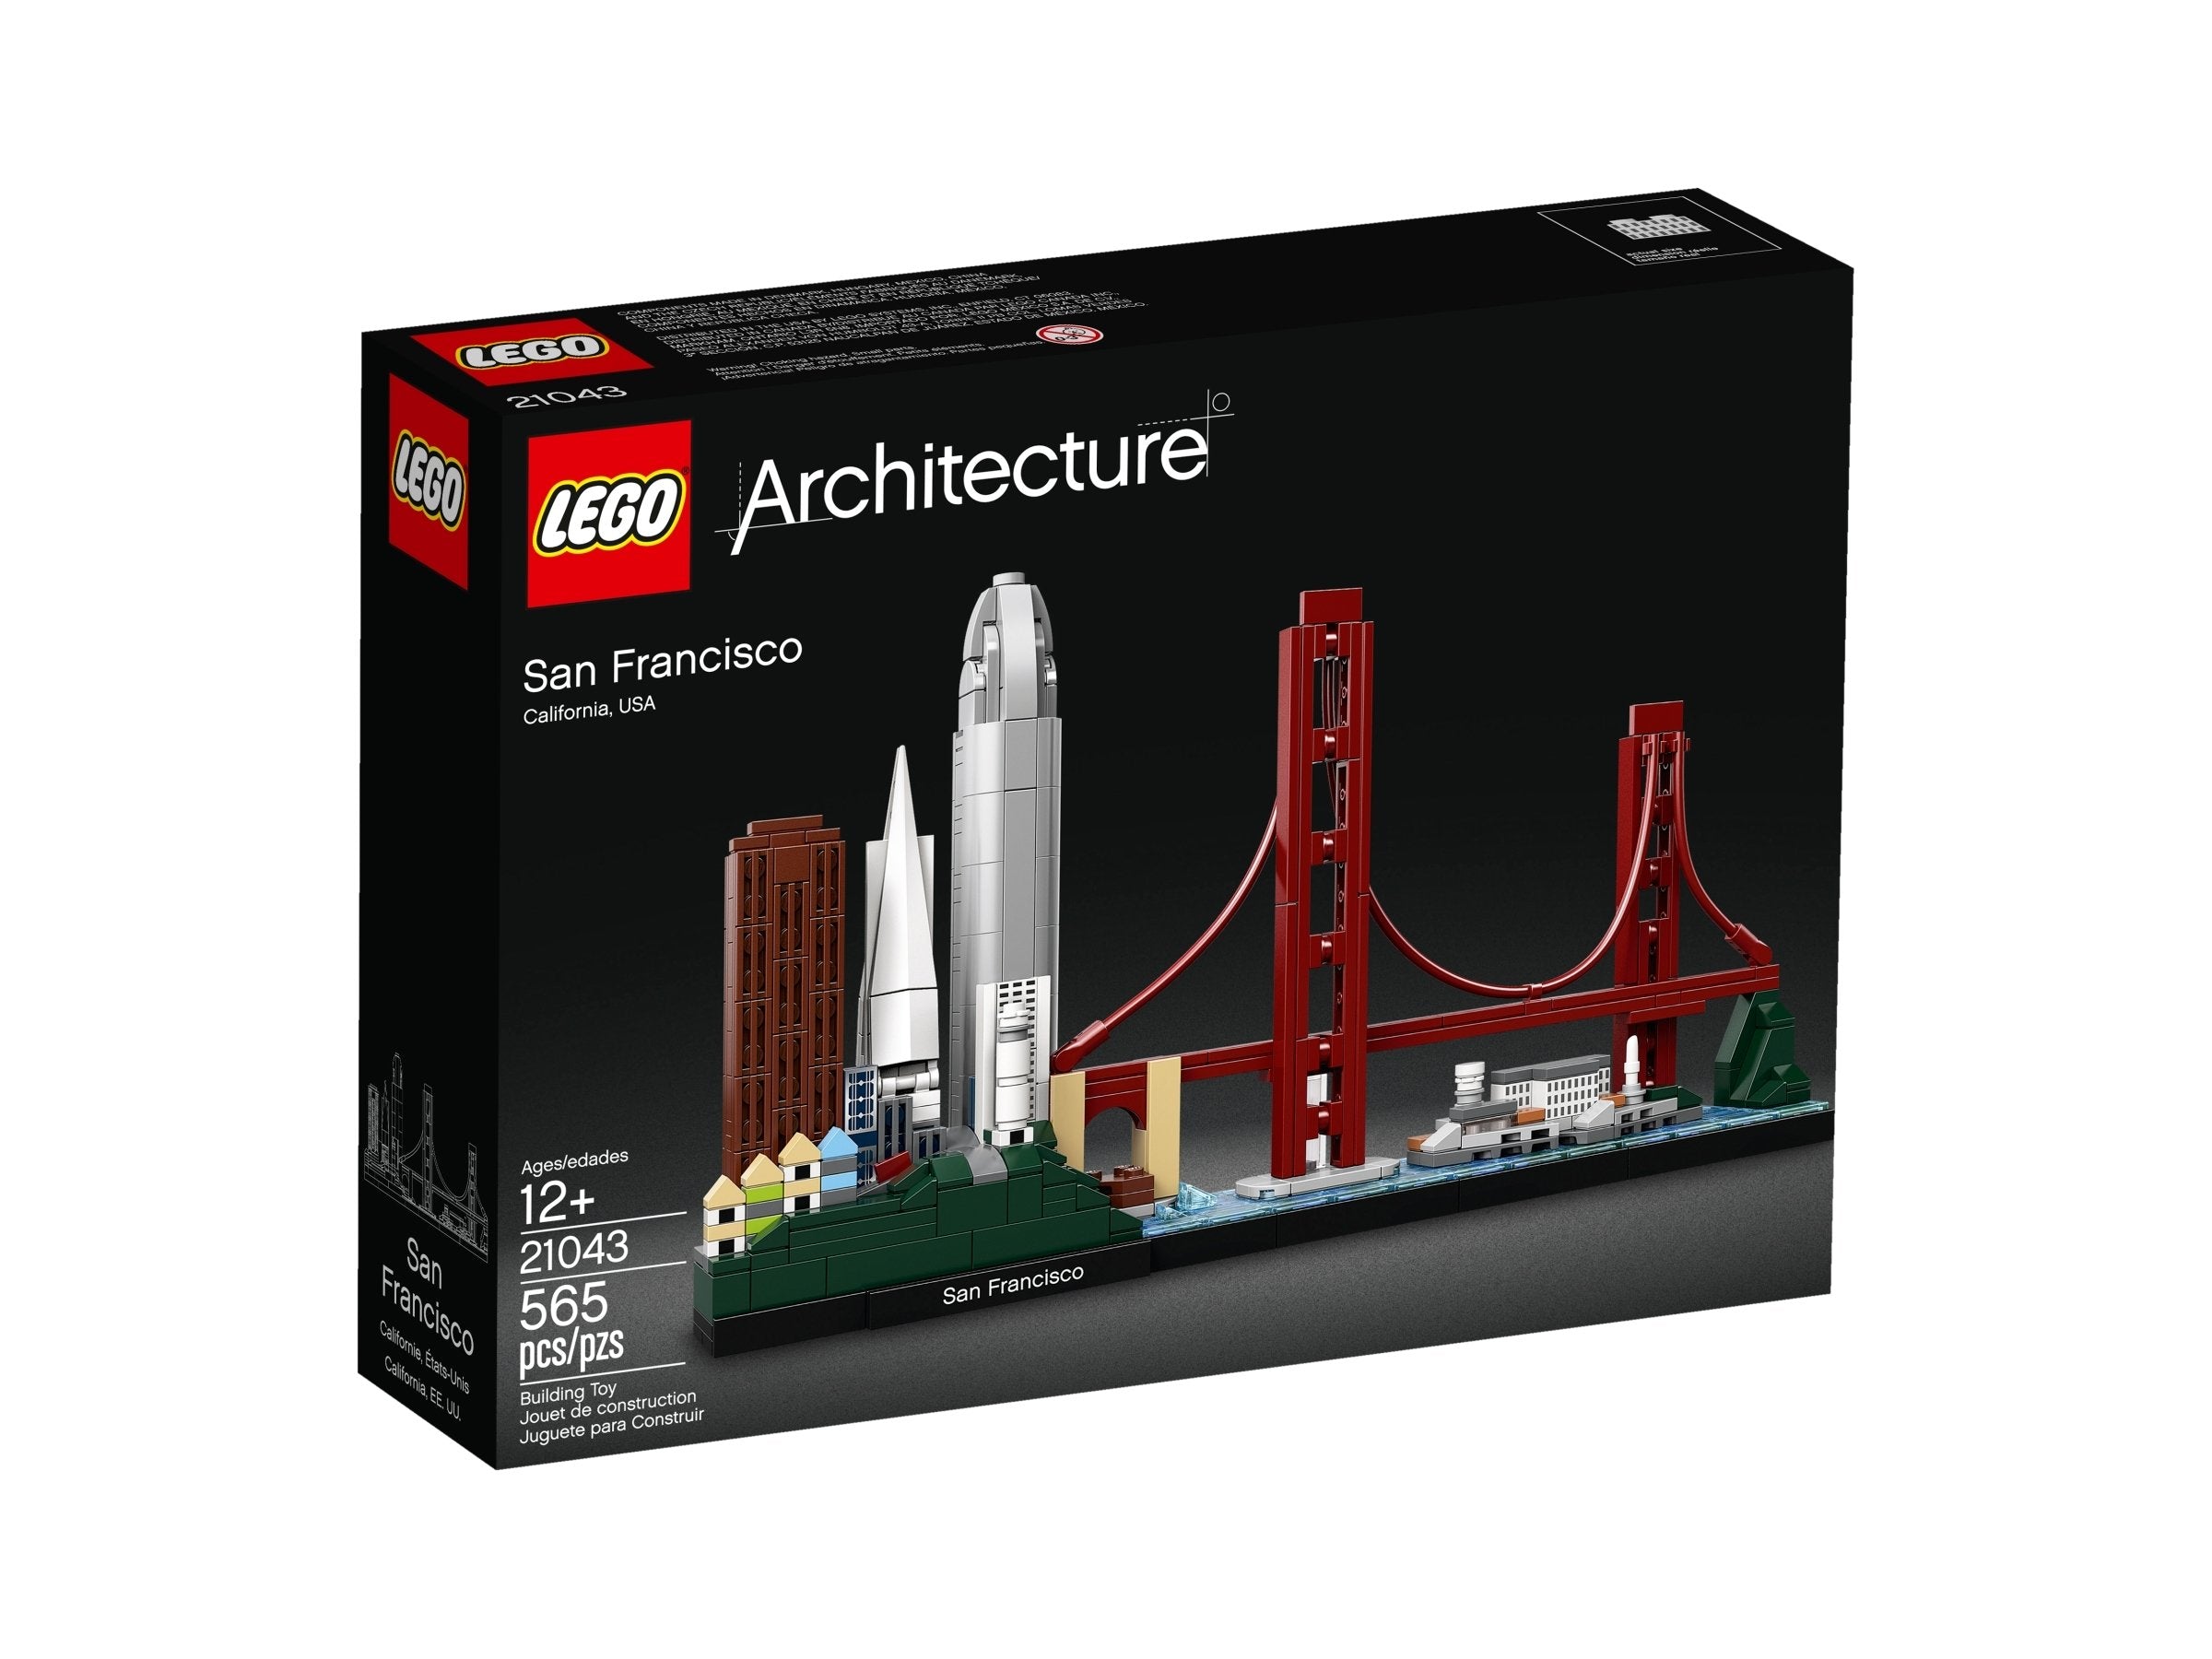 LEGO Architecture San Francisco (21043) - im GOLDSTIEN.SHOP verfügbar mit Gratisversand ab Schweizer Lager! (5702016368307)